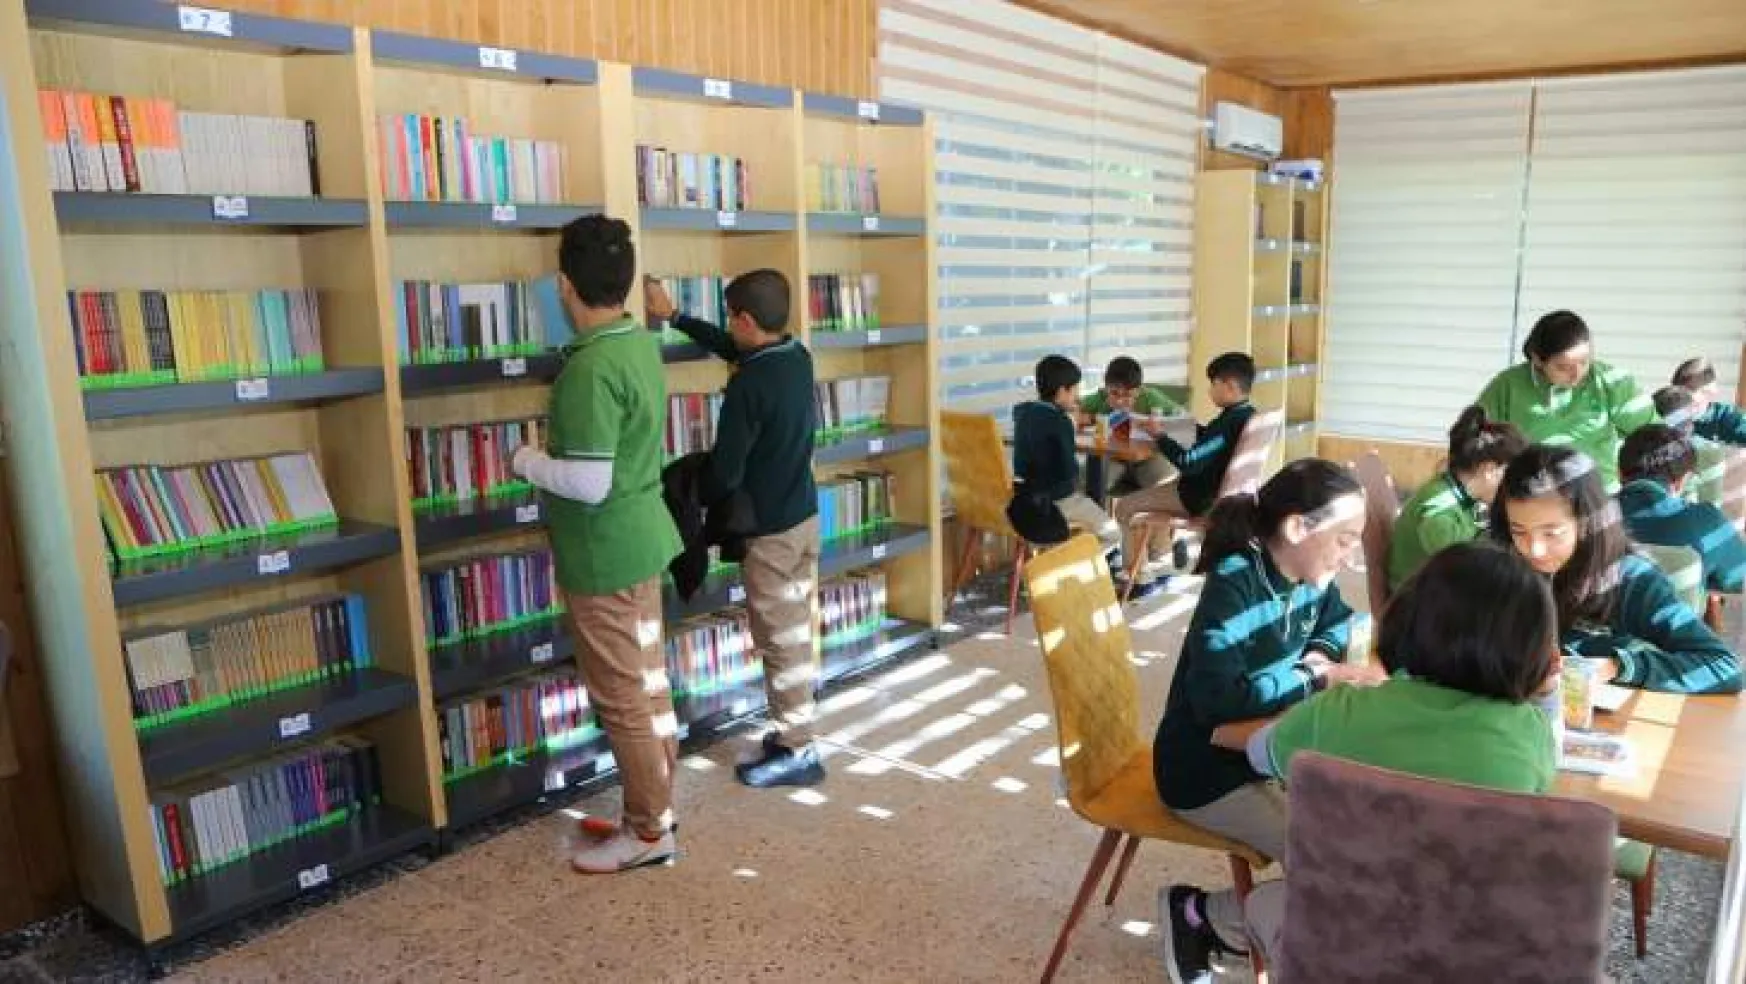 Millet Kıraathanesi Bünyesinde Oluşturulan Kütüphane Yoğun İlgi Görüyor